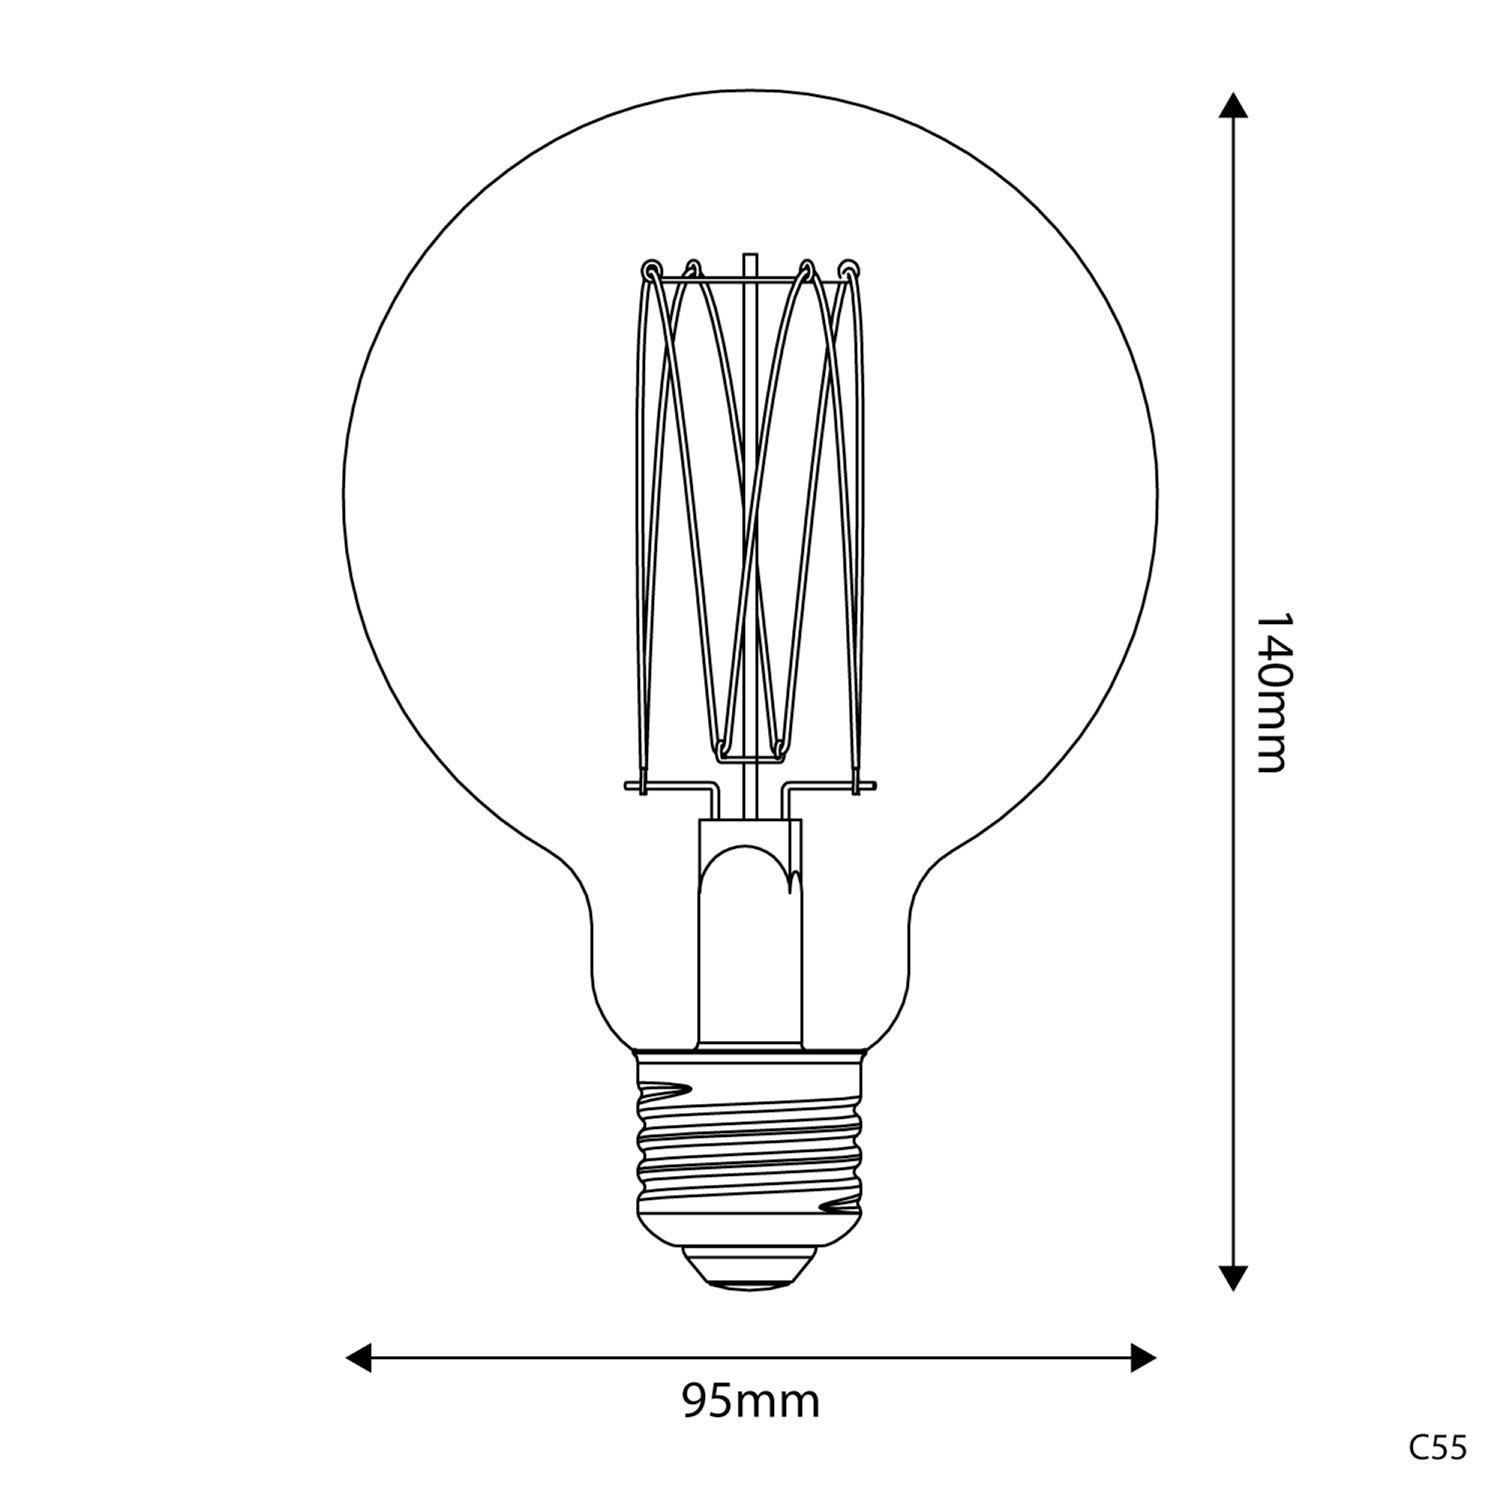 Ampoule Dorée LED Carbon Line Filament Cage Globe G95 7W 640Lm E27 2700K Dimmable - C55